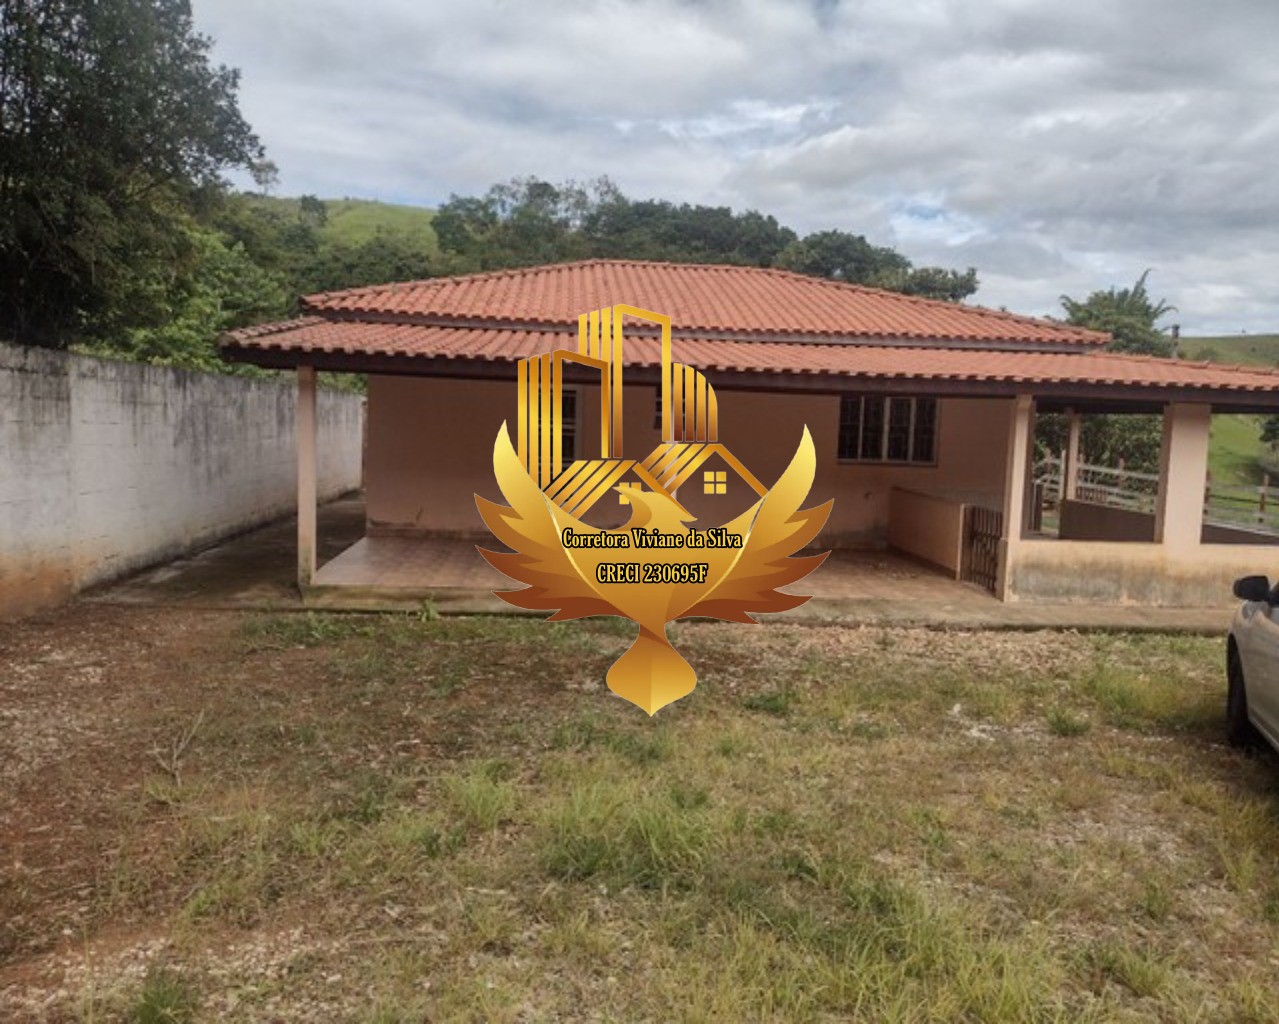 Sítio de 2 ha em São Luiz do Paraitinga, SP